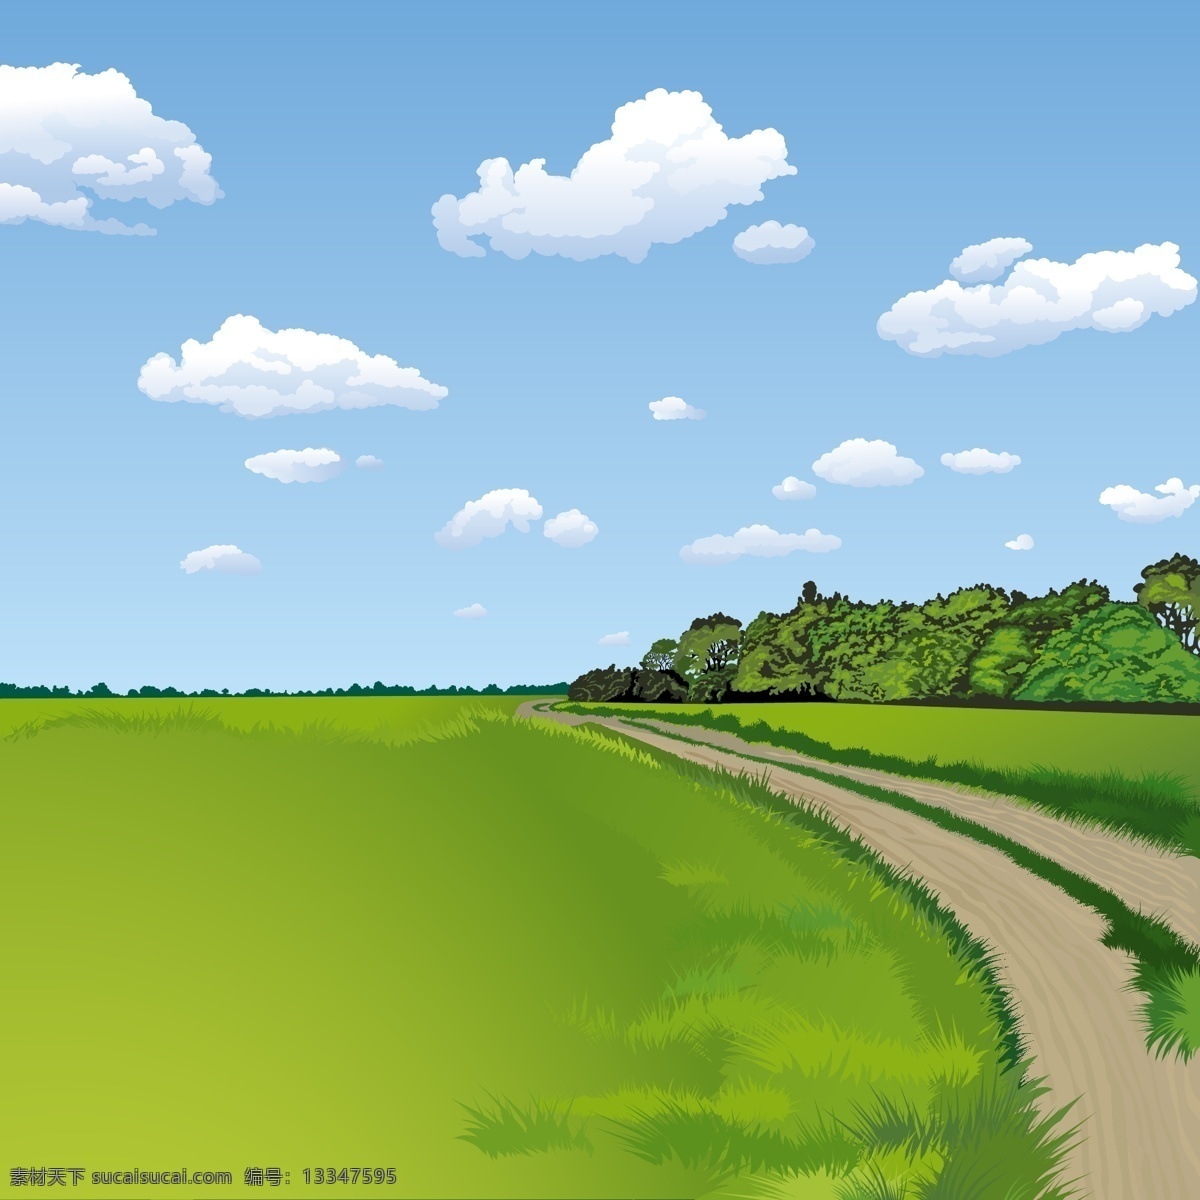 风景如画 户外 田野 背景 设计素材 风景 如画 天空 蓝天 云朵